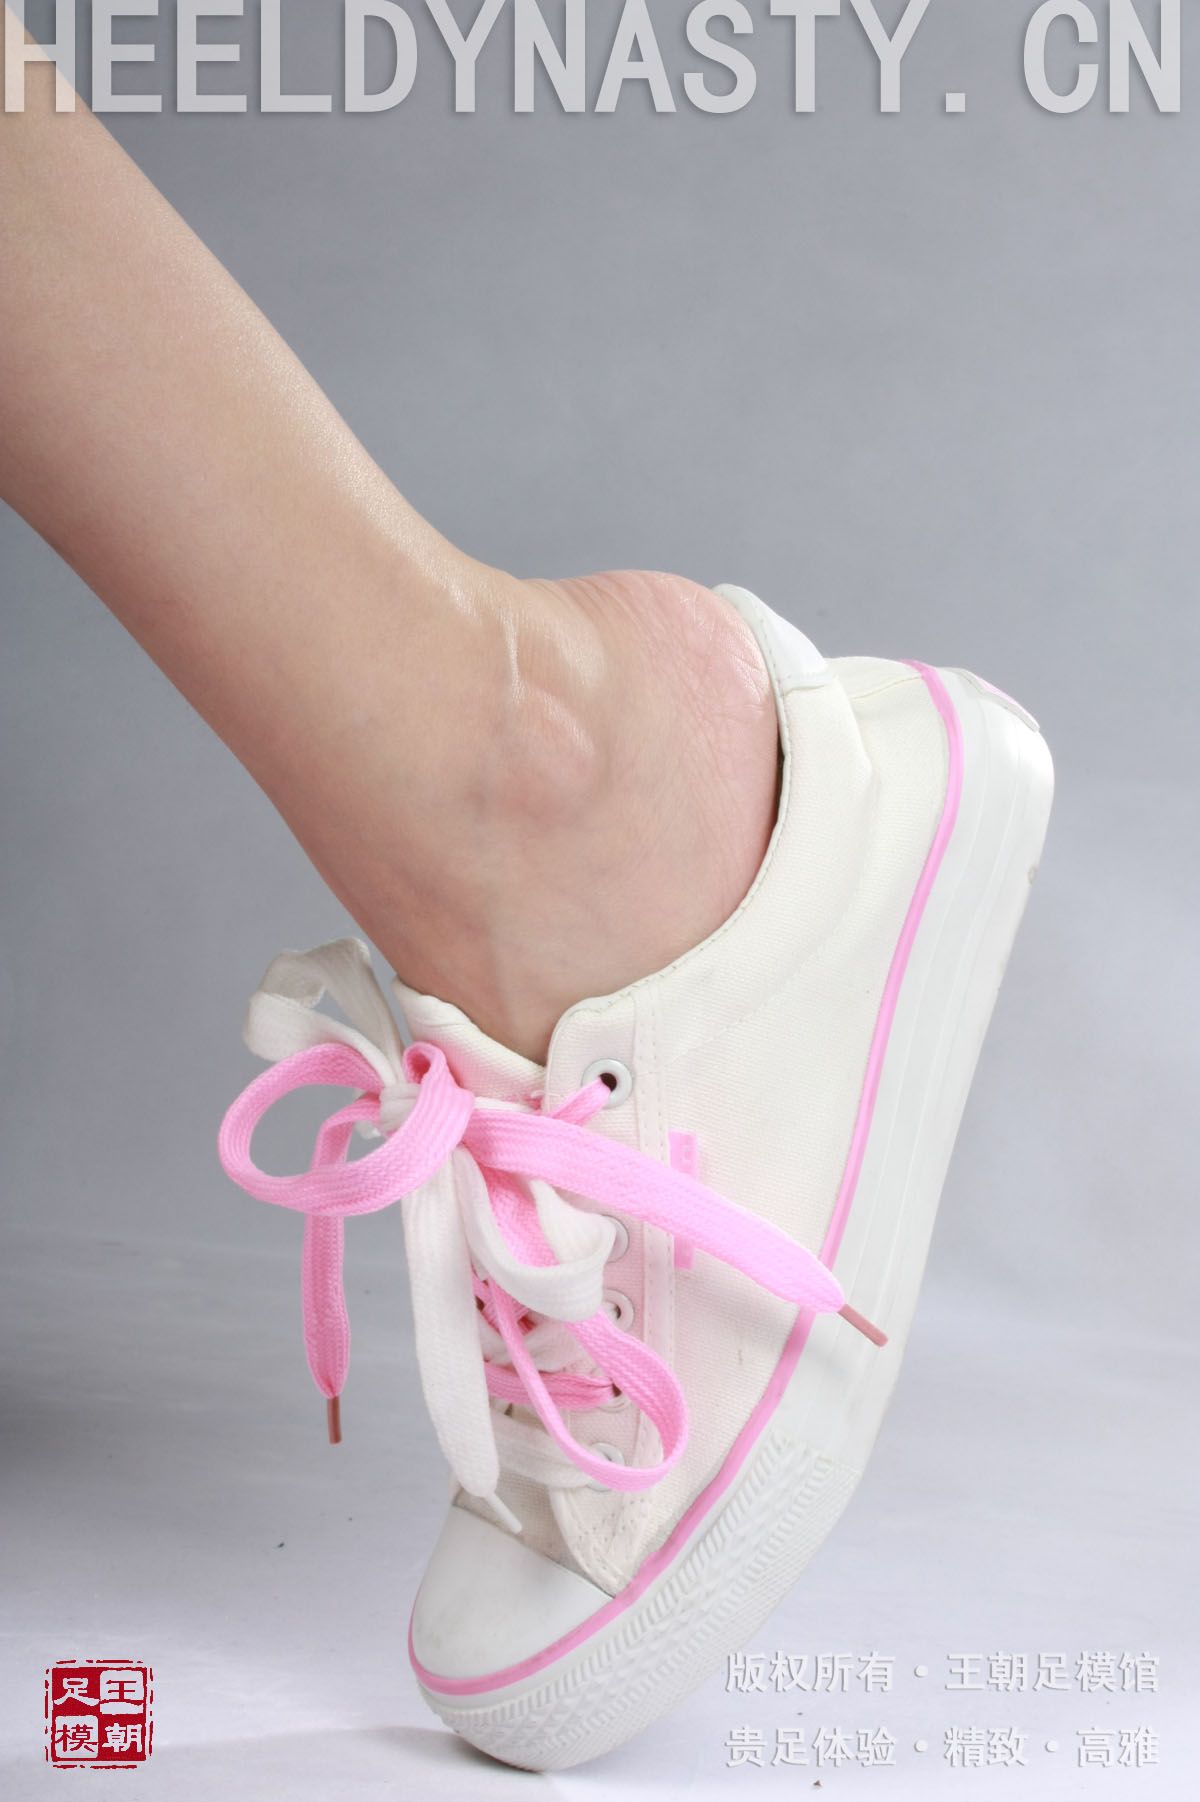 [王朝贵足丝袜] 2009-02-12 室内套图 布丁裸足粉色运动球鞋清晰足跟写真系列3